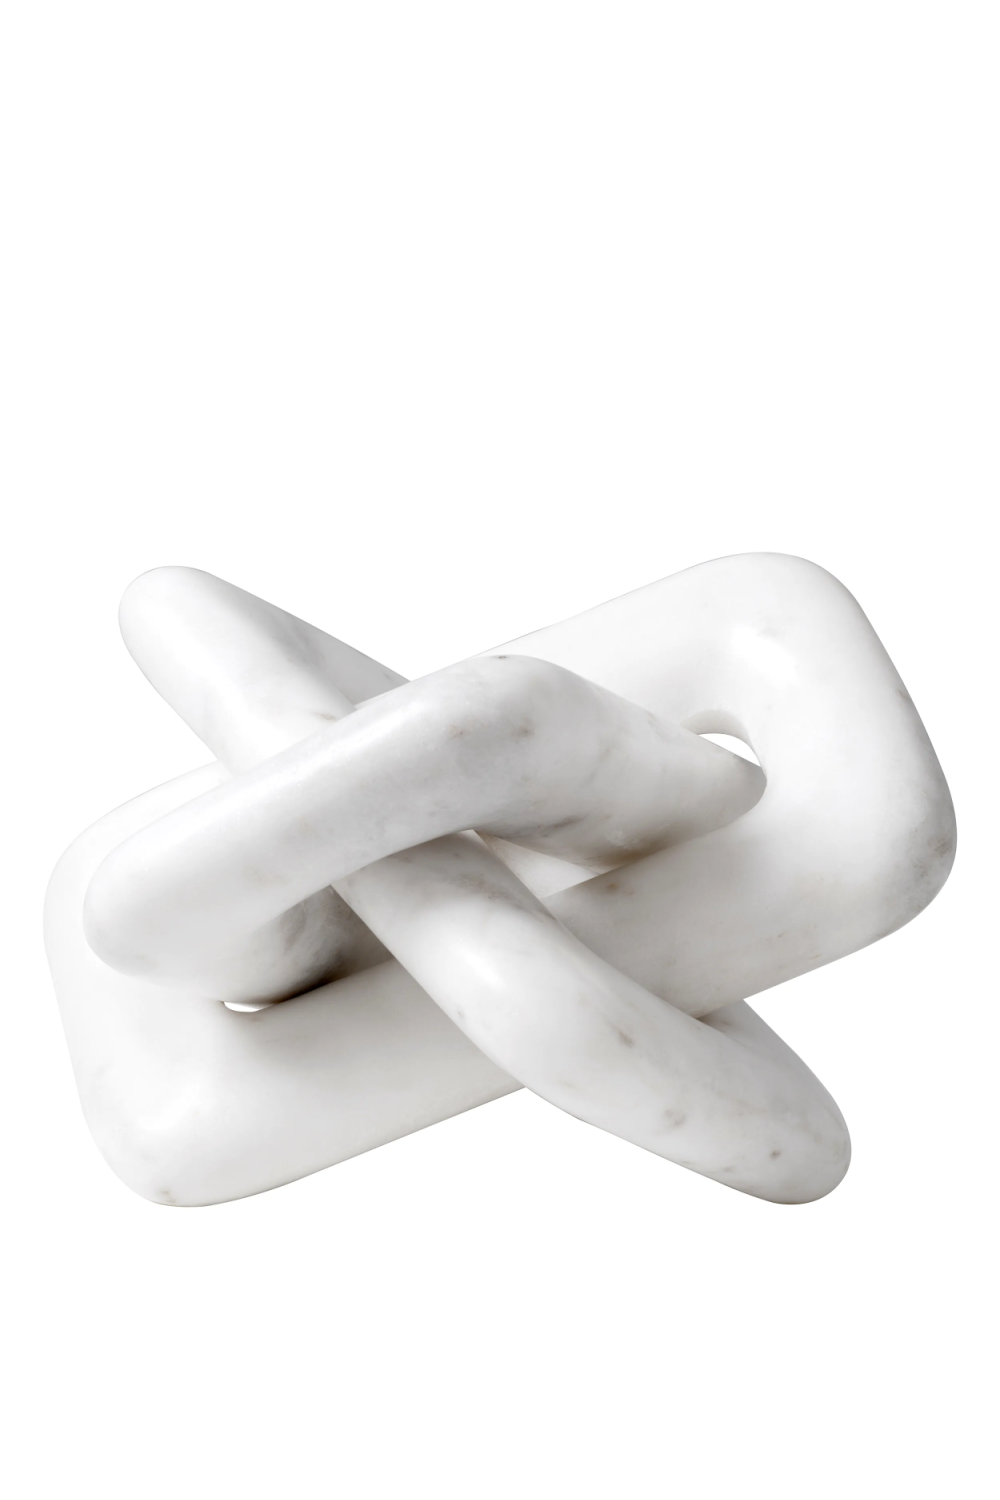 White Marble Unique Decorative Object | Eichholtz Eras | Oroa.com